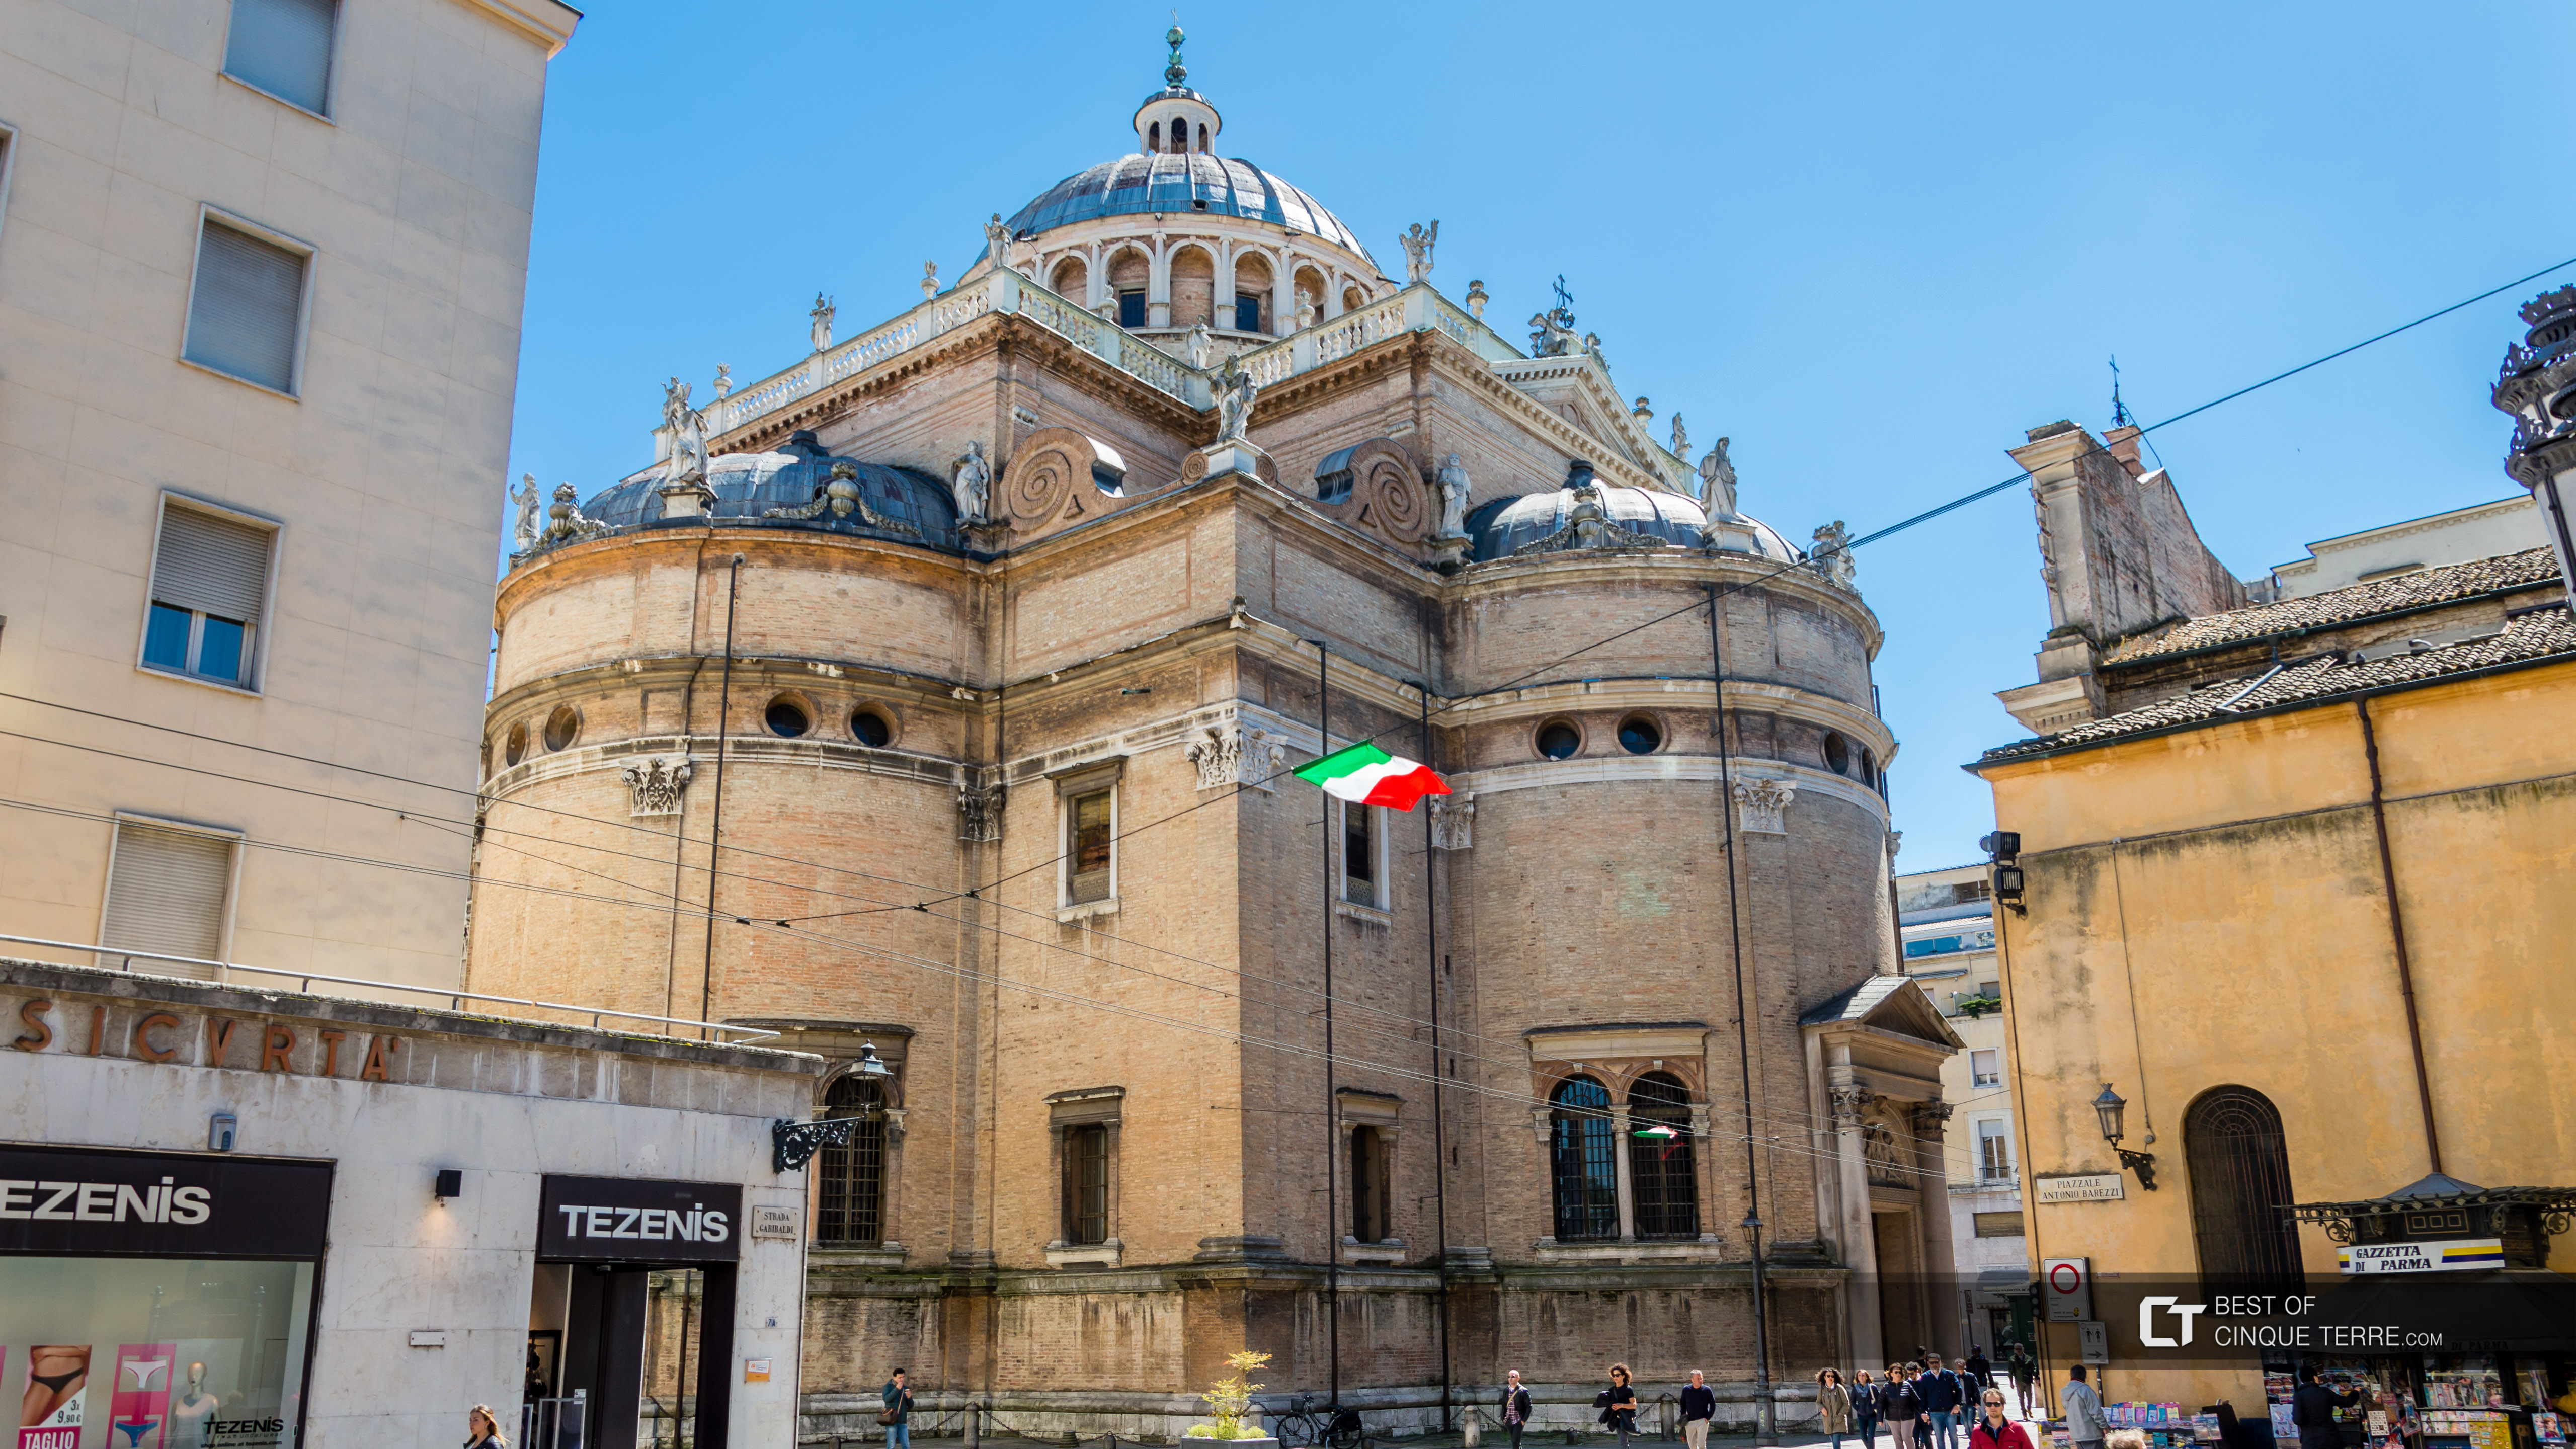 Базиліка Санта-Марія-делла-Стекката, Парма, Італія